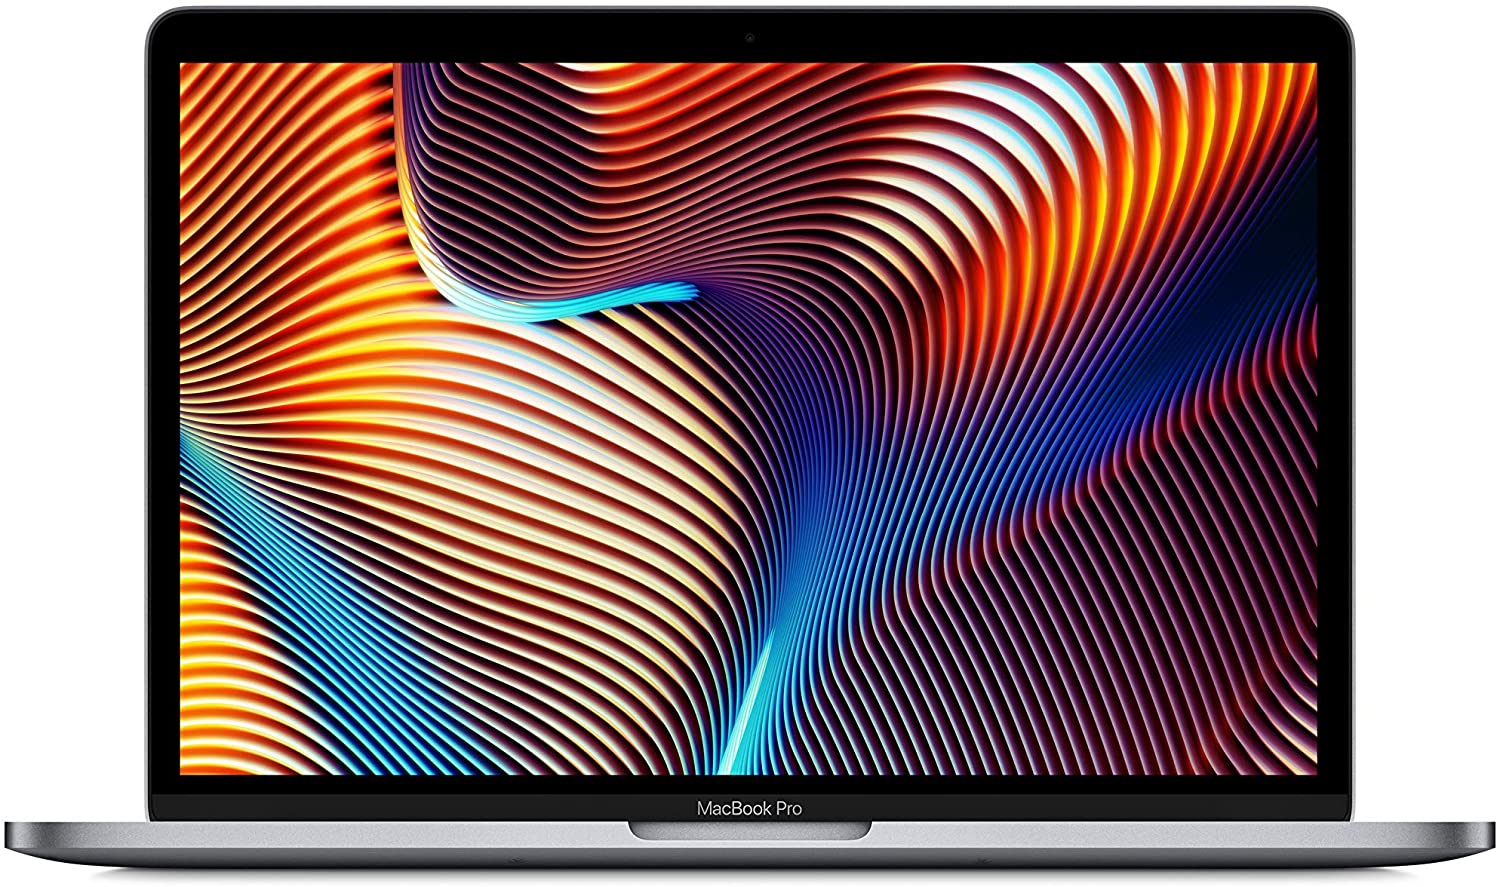 終了】MacBook Pro 13インチ (Mid 2019)がタイムセール特価で販売中 | オーケーマック